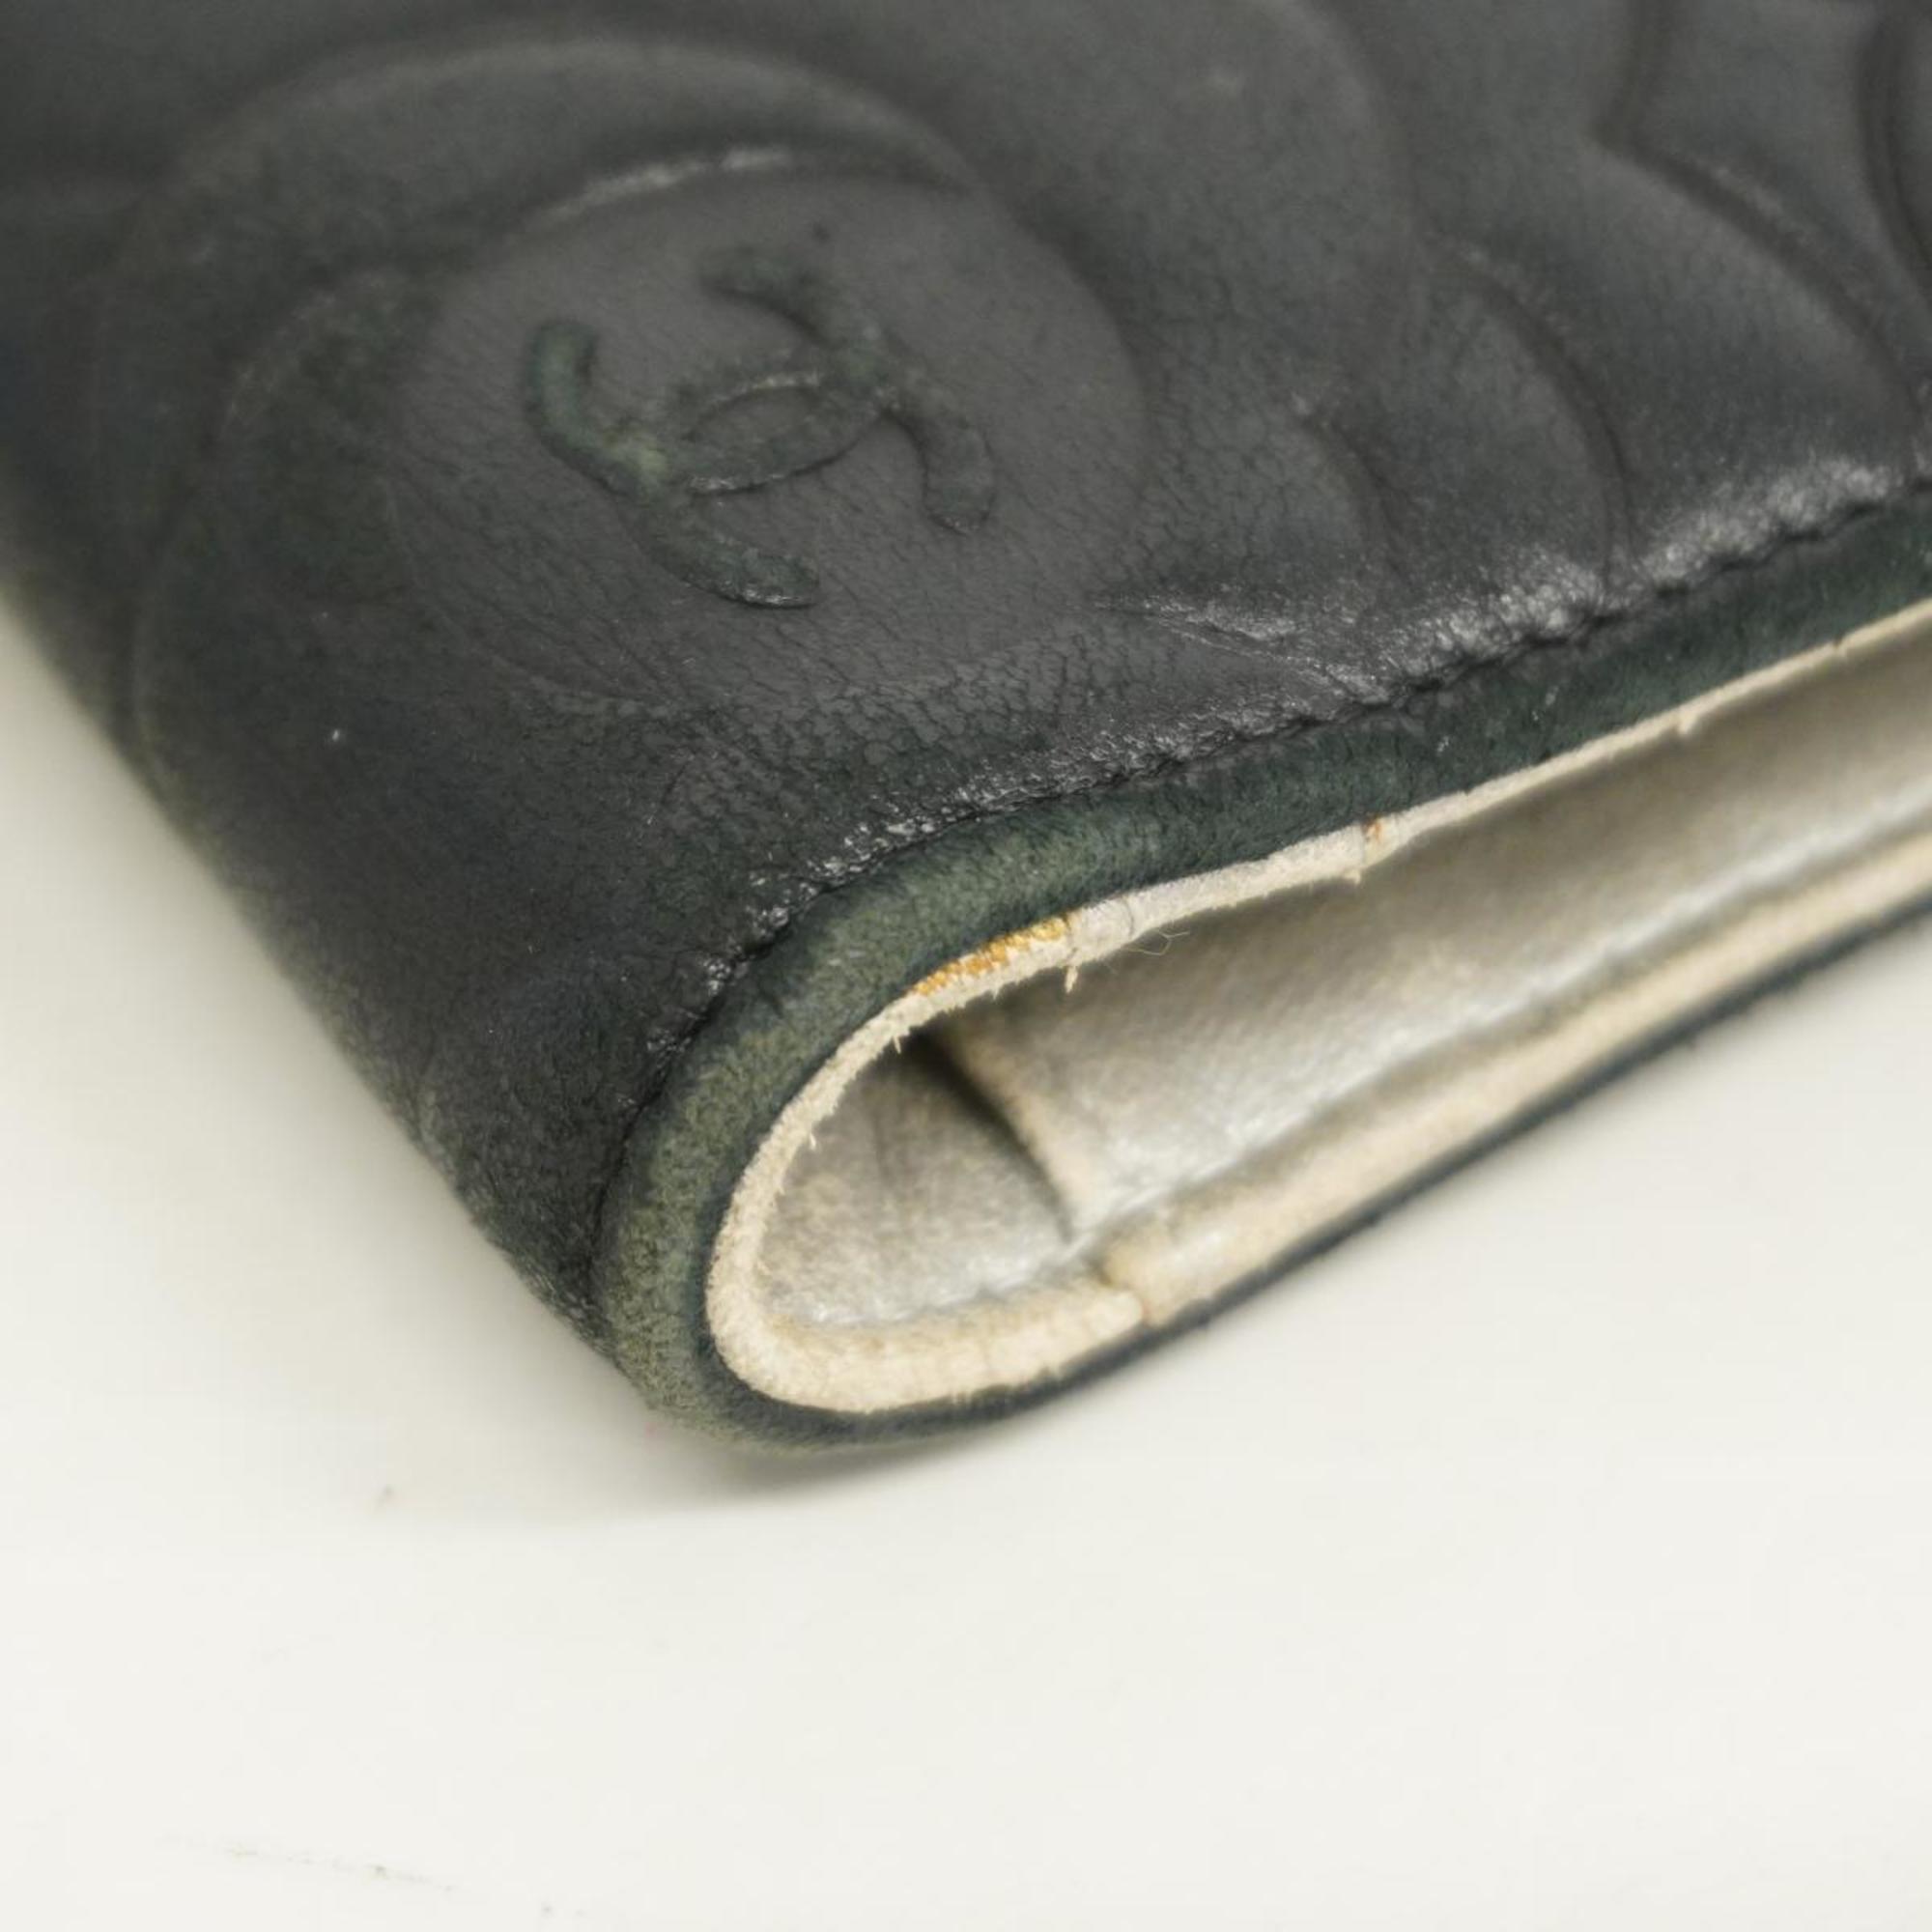 Chanel Long Wallet Camellia Lambskin Black Women's